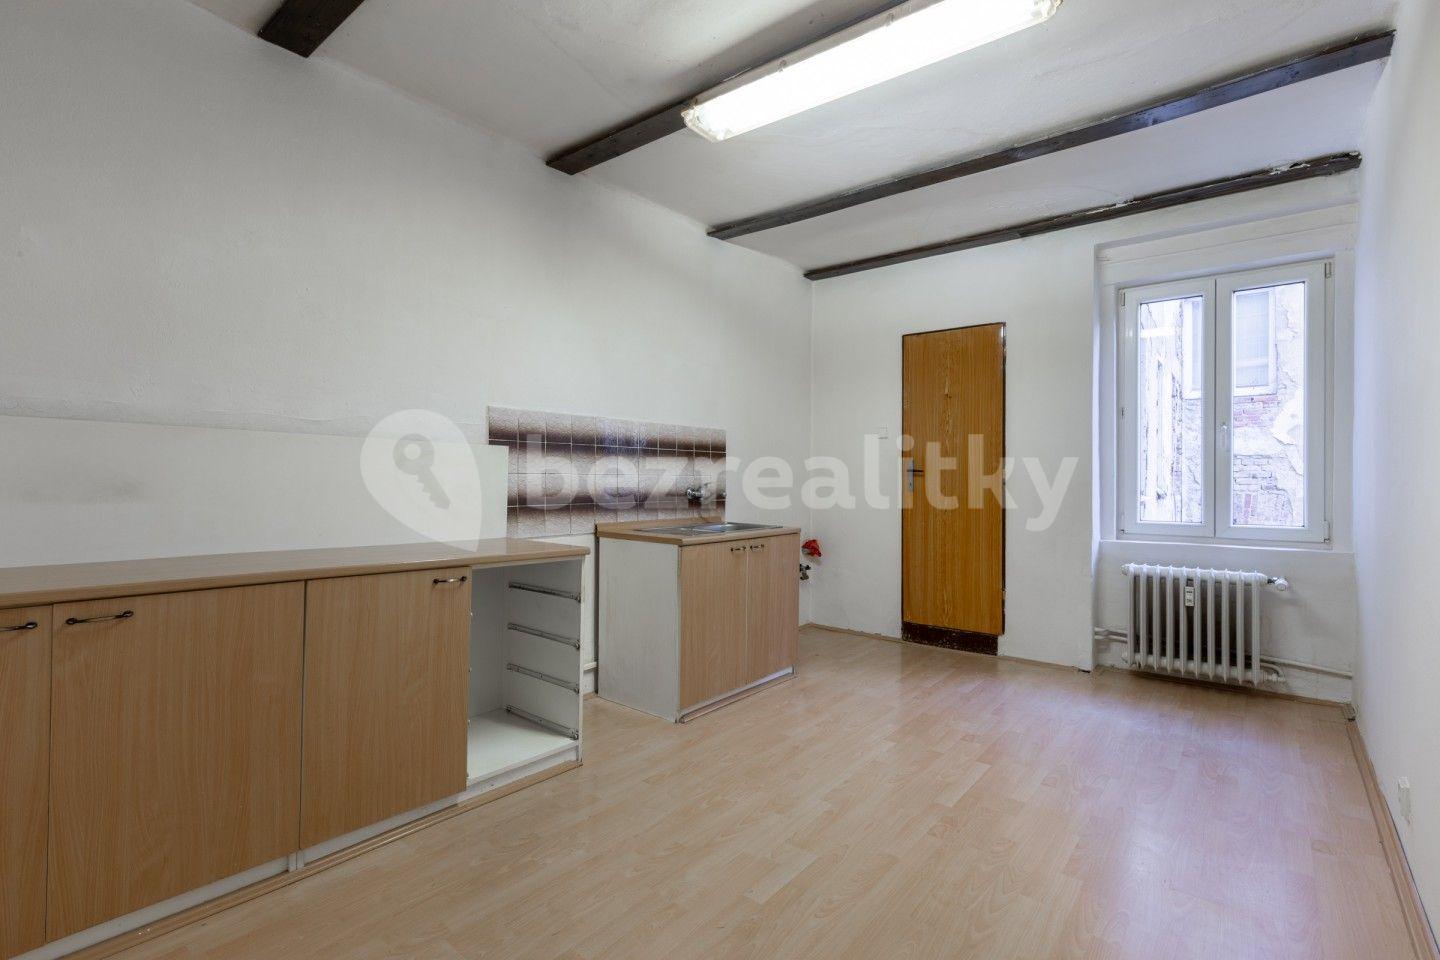 3 bedroom flat for sale, 83 m², Anglická, Mariánské Lázně, Karlovarský Region